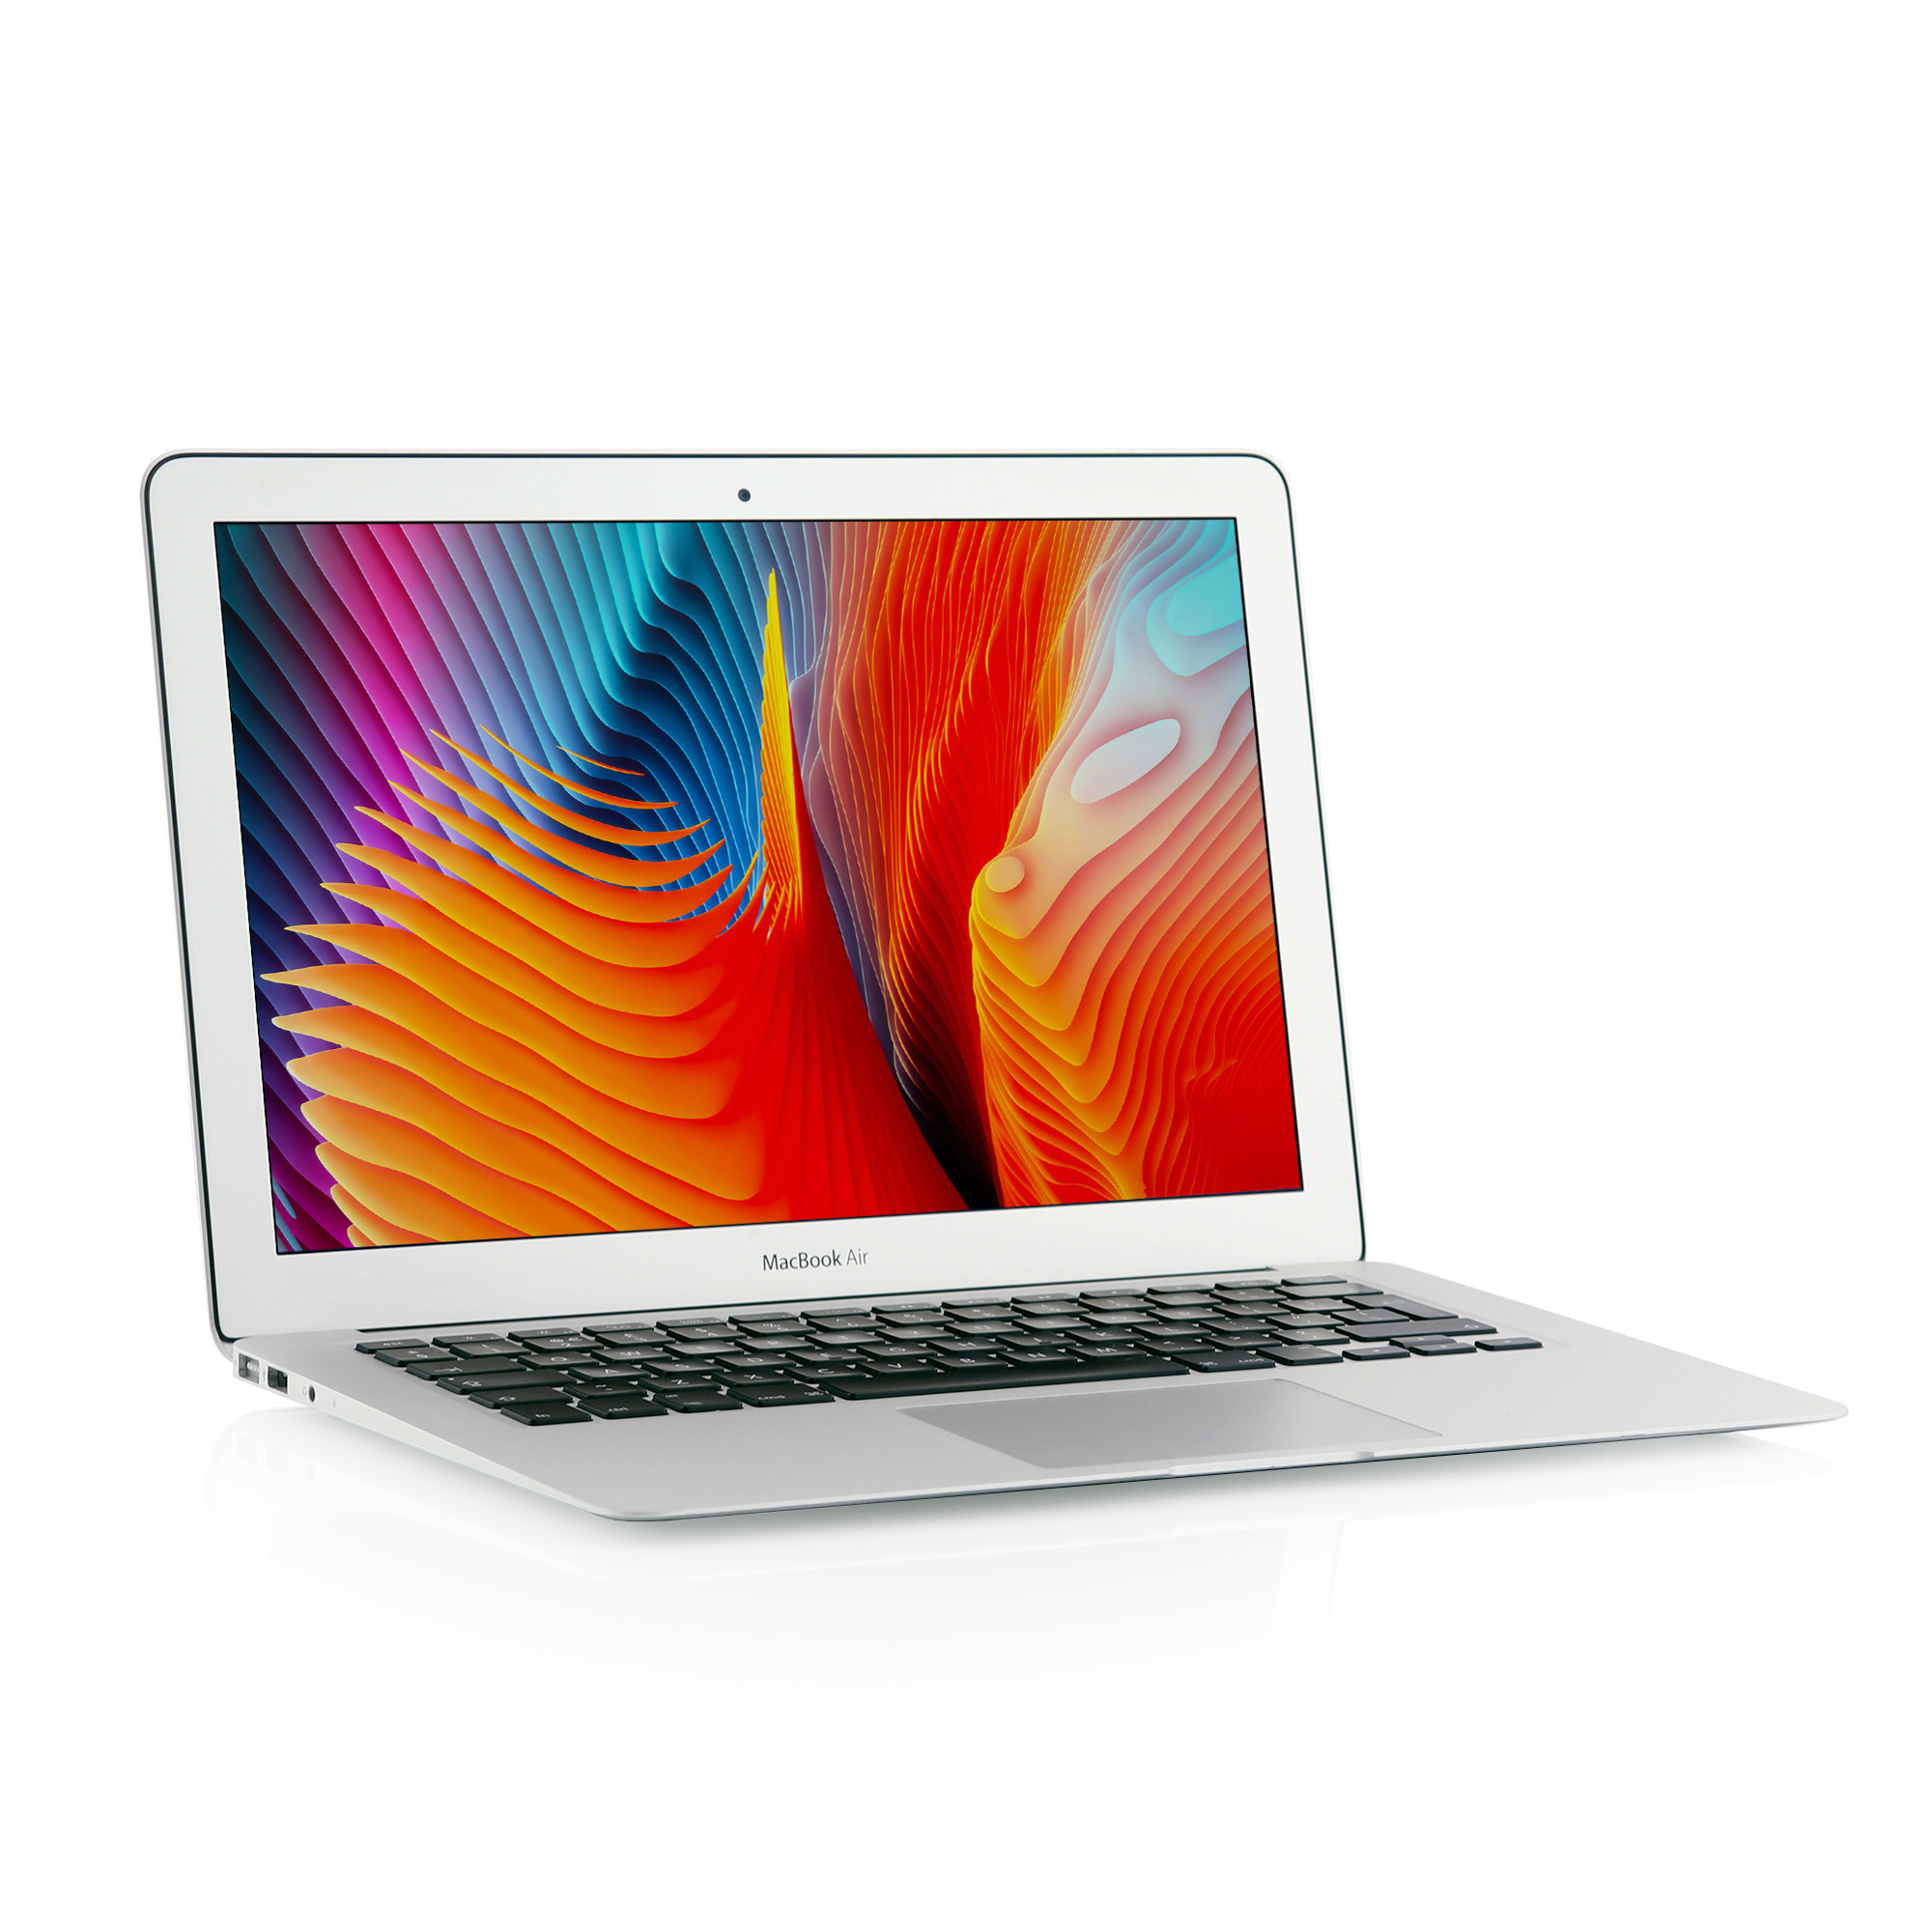 2017 Apple MacBook Air 13-inch Intel i7 2.20 GHz 2-core 8GB 256GB - Silver - 